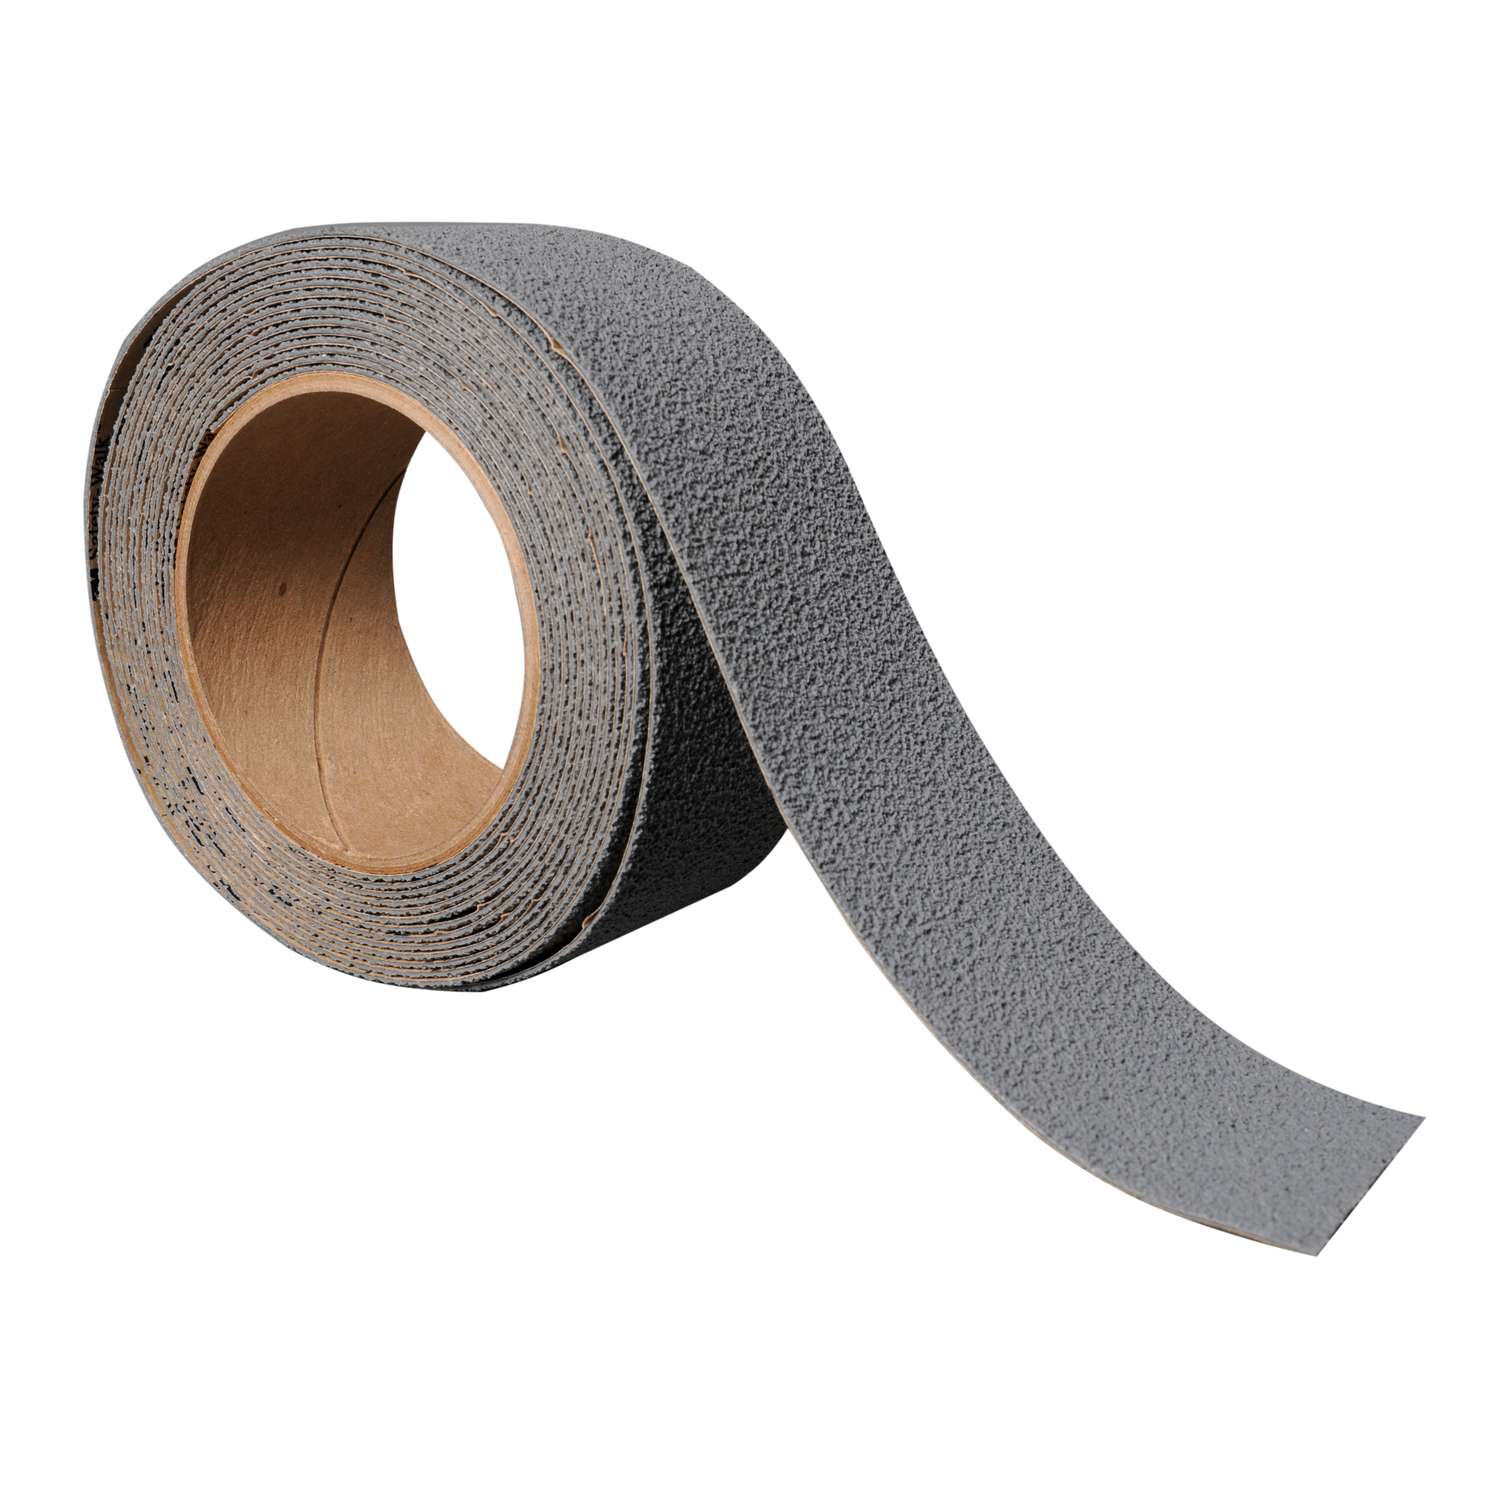 Indoor/Outdoor Reflective Anti Slip Grip Tape Strips